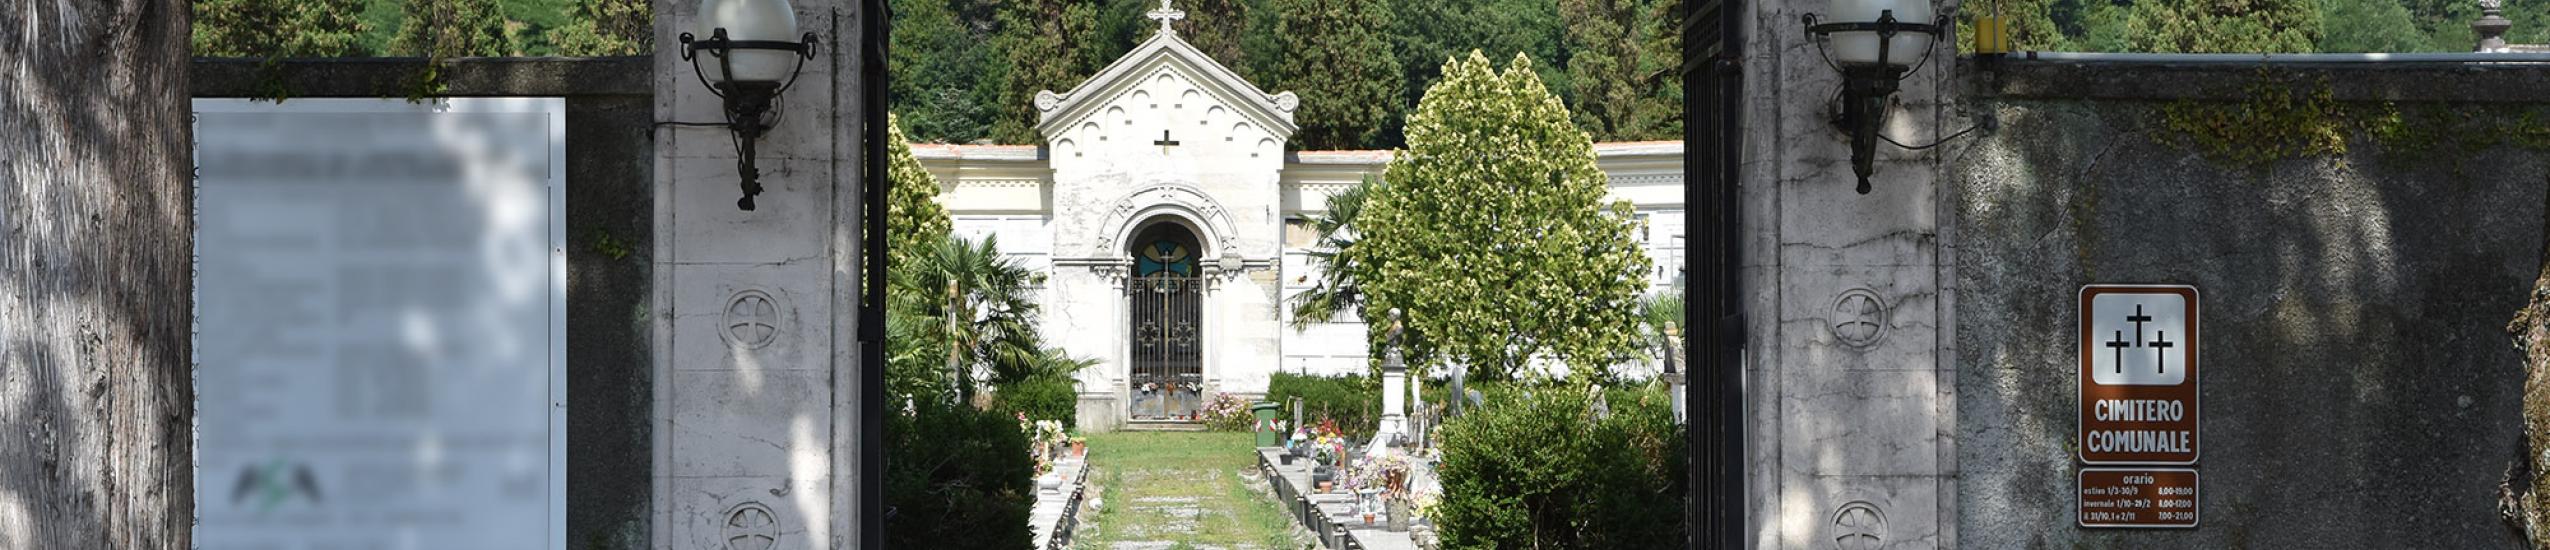 L'ingresso del Cimitero